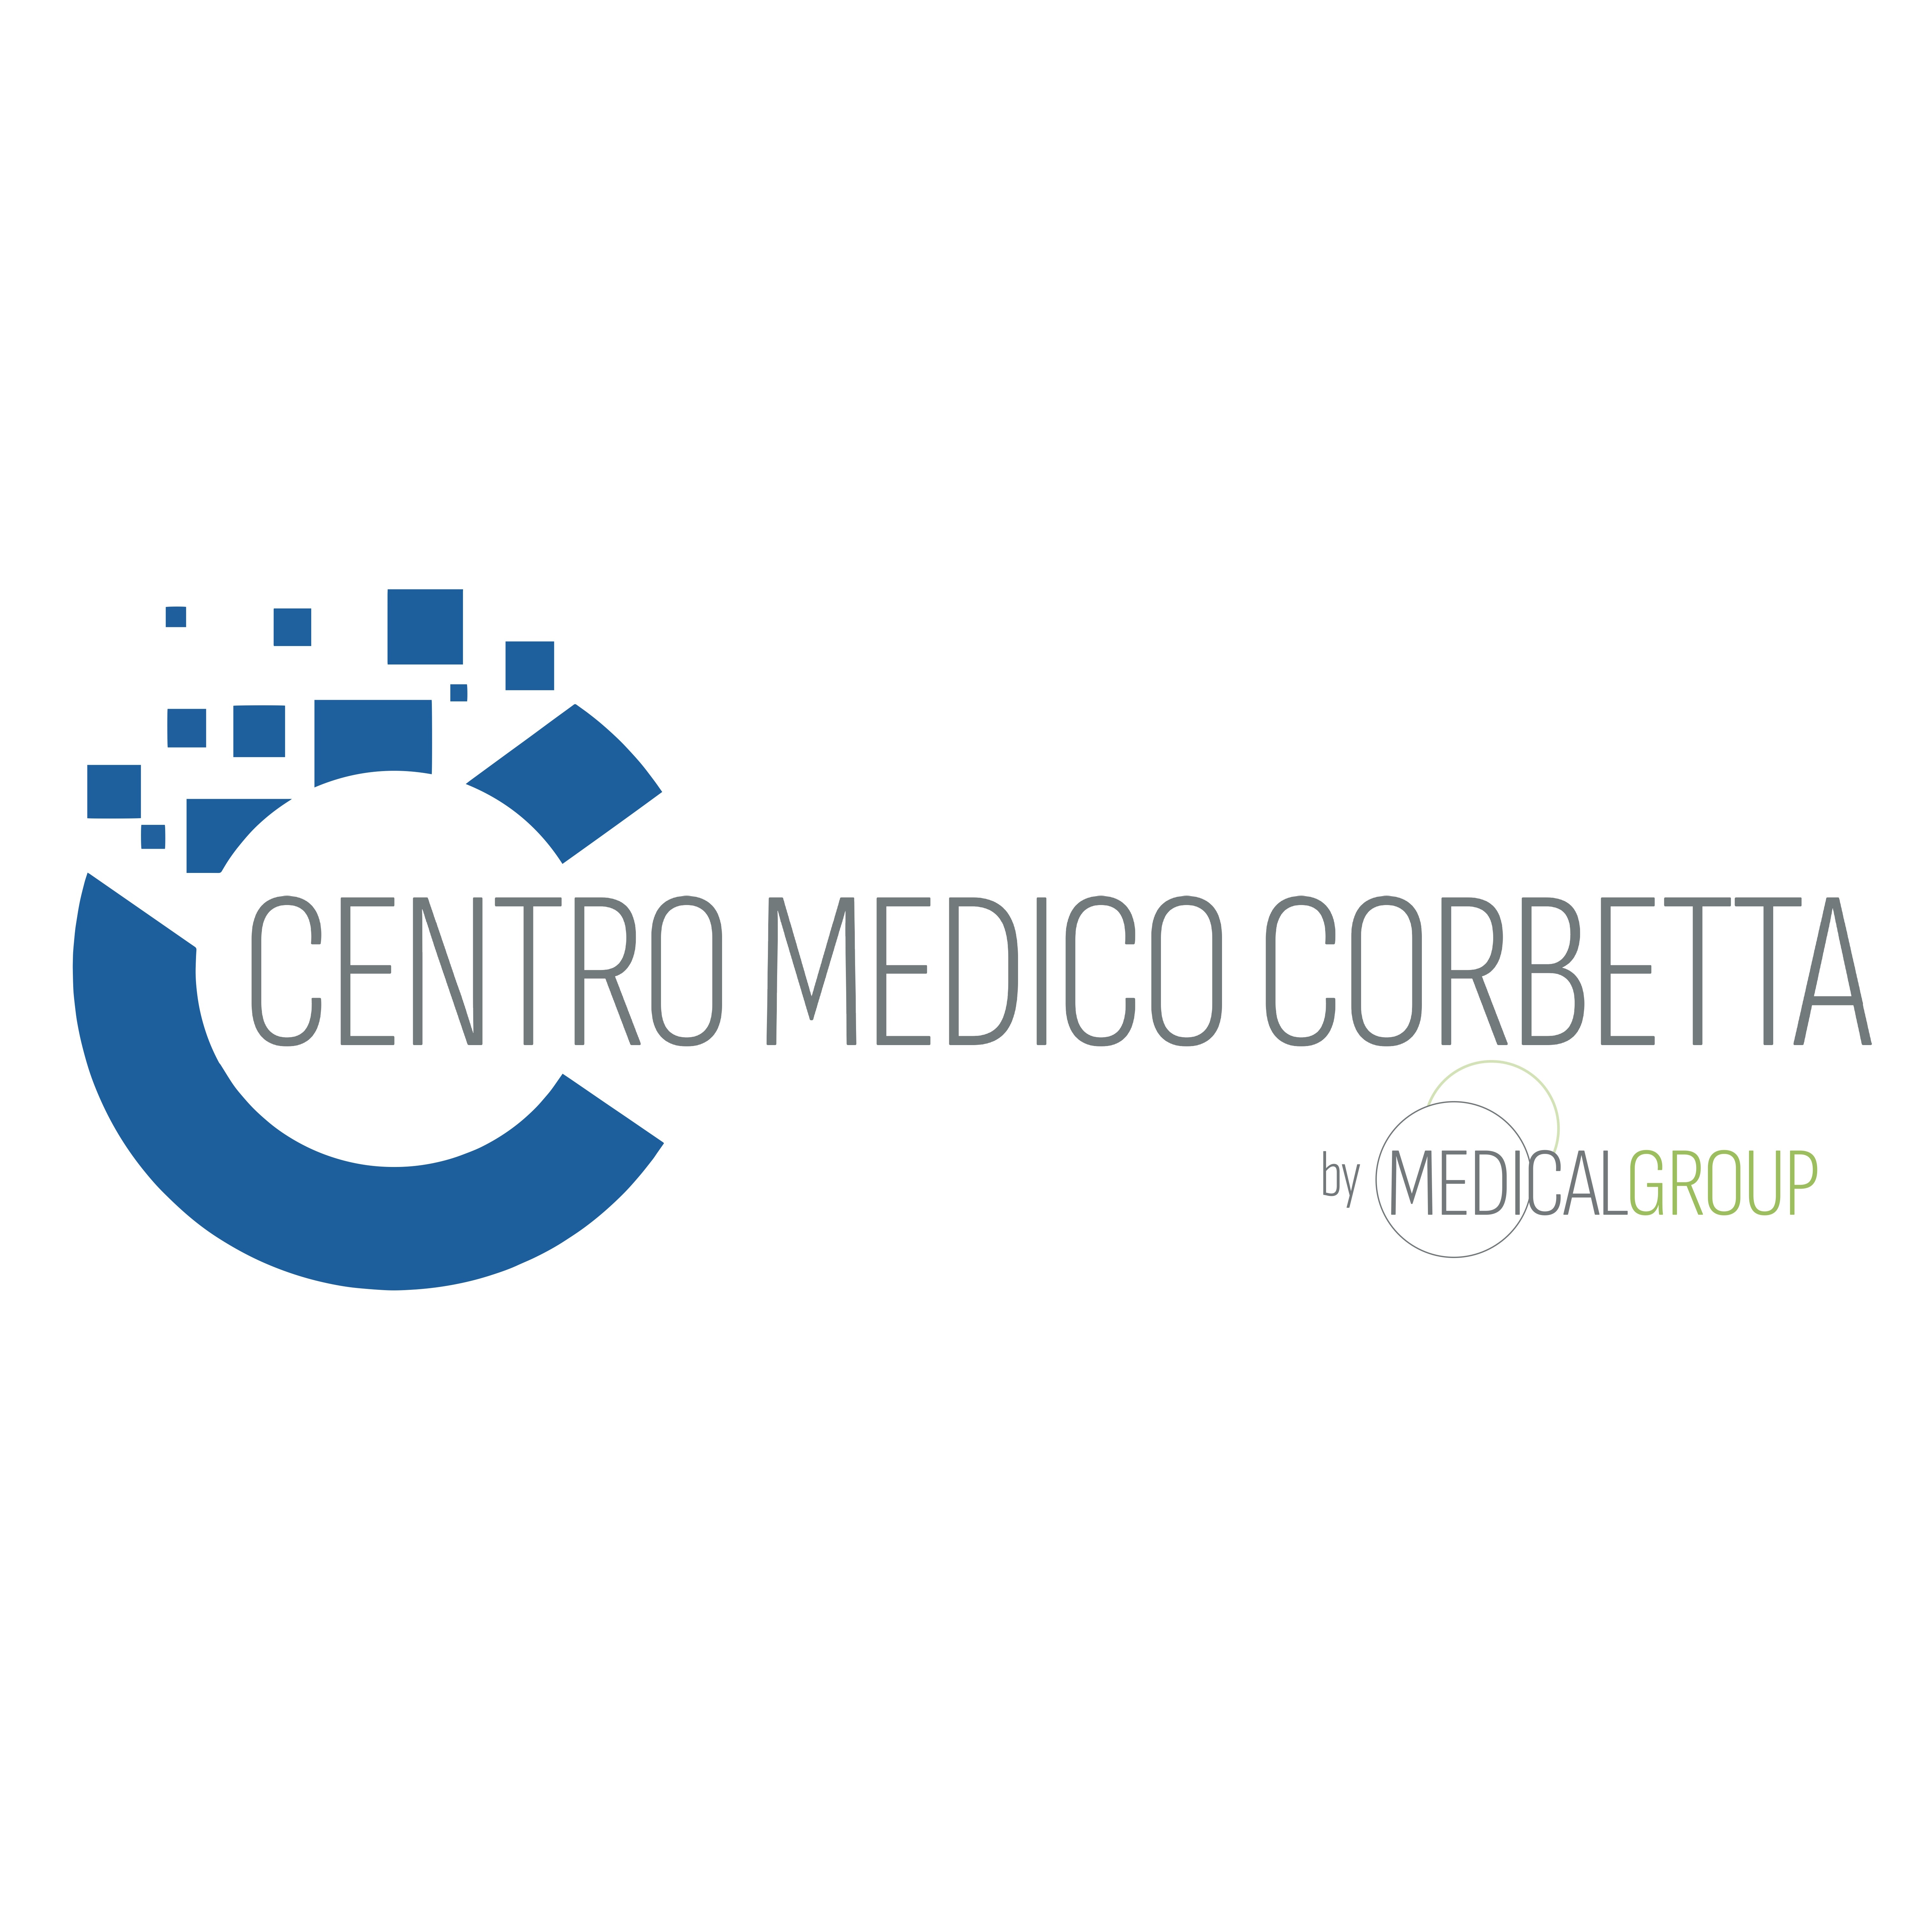 Centro Medico Corbetta